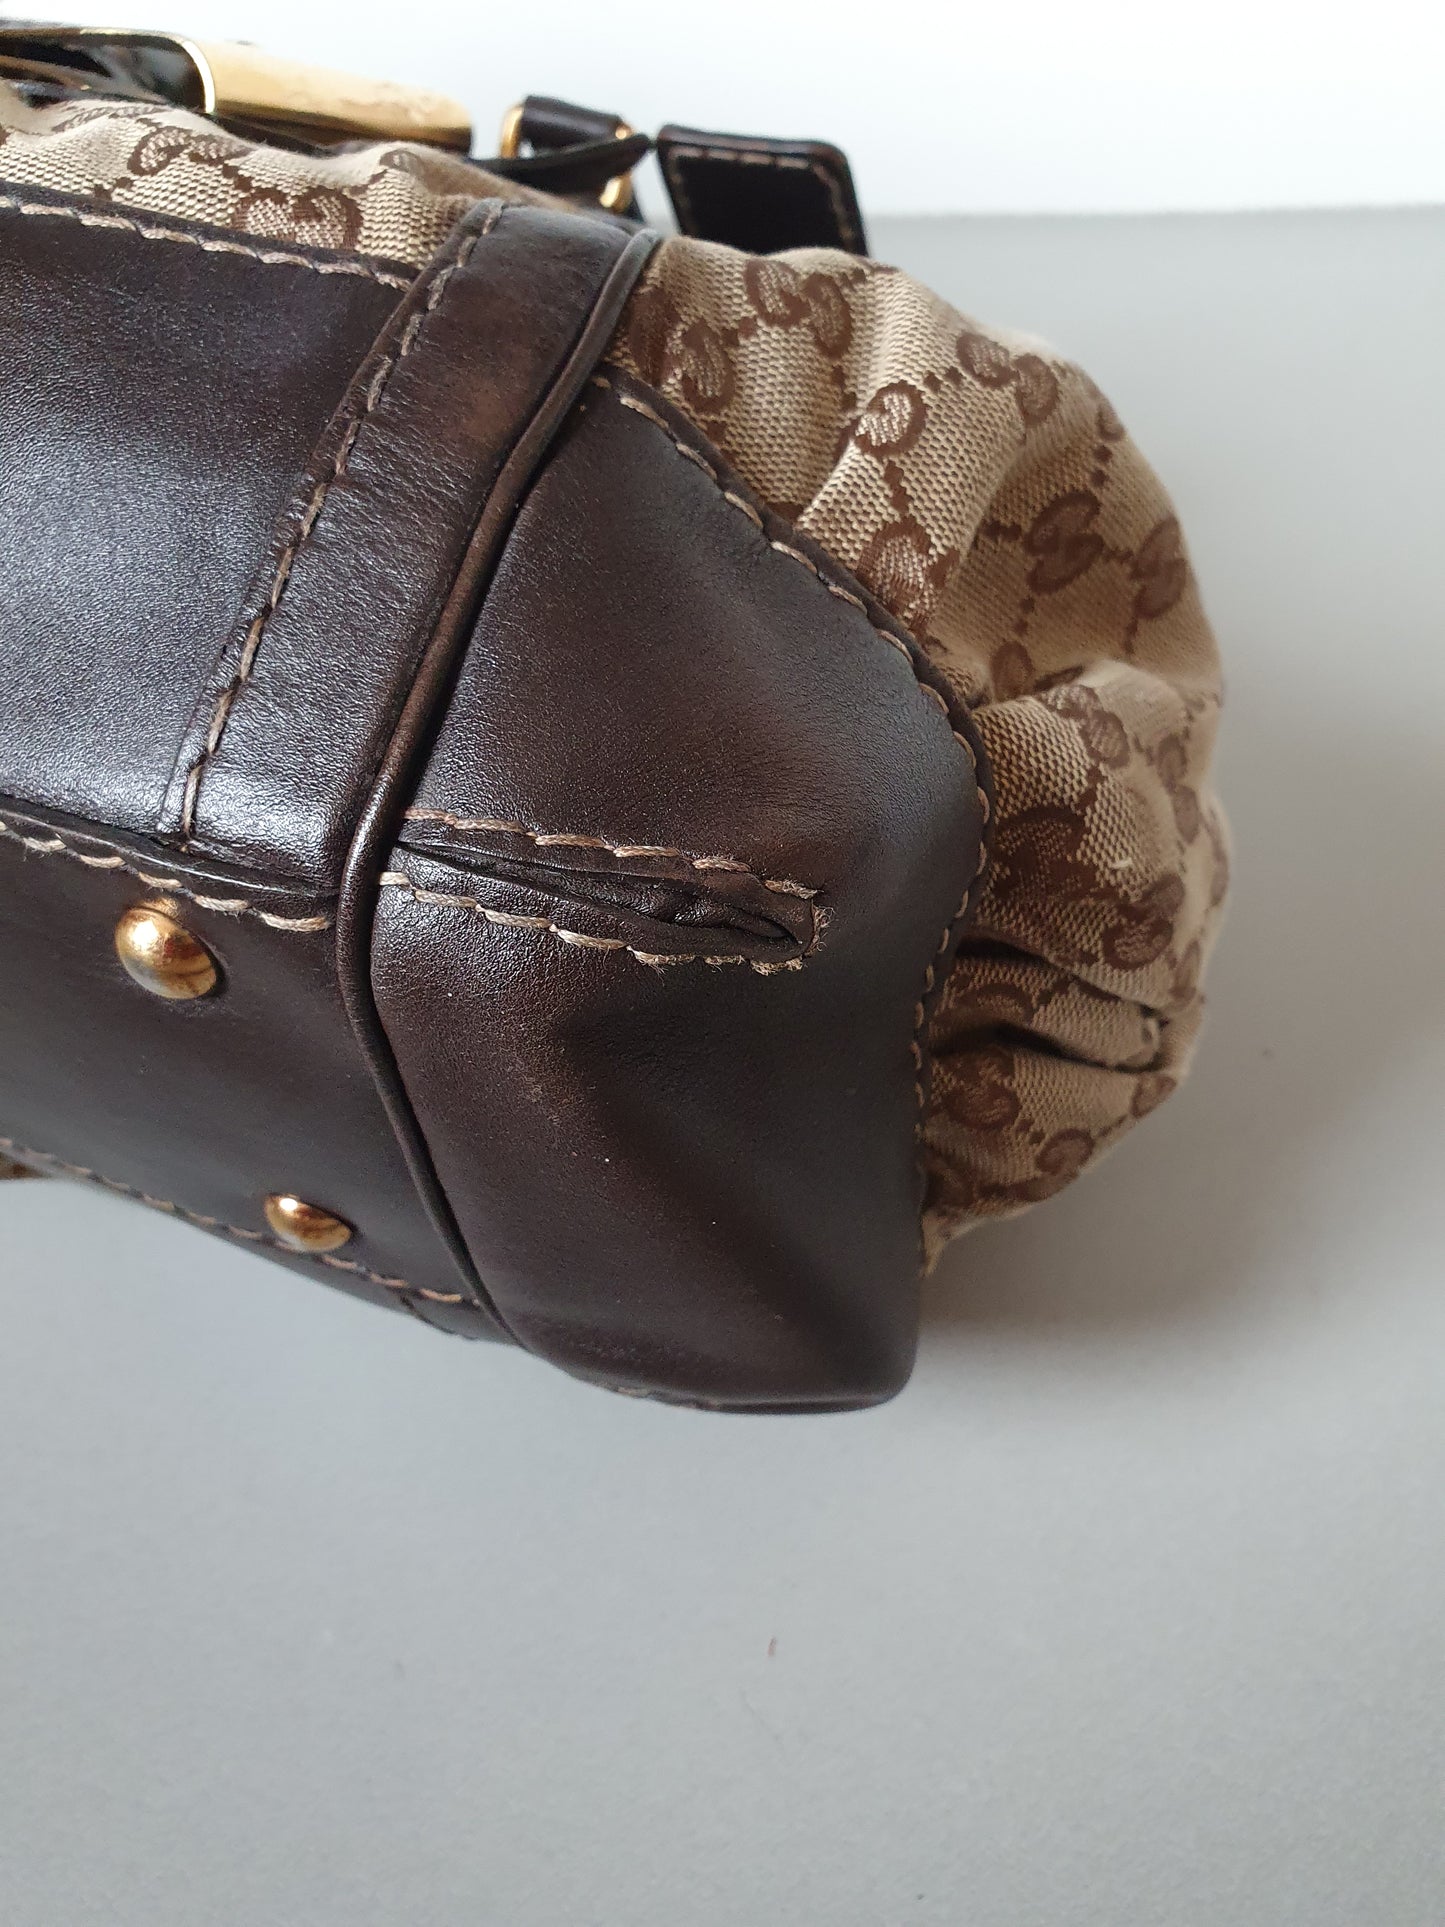 Gucci bow large handbag